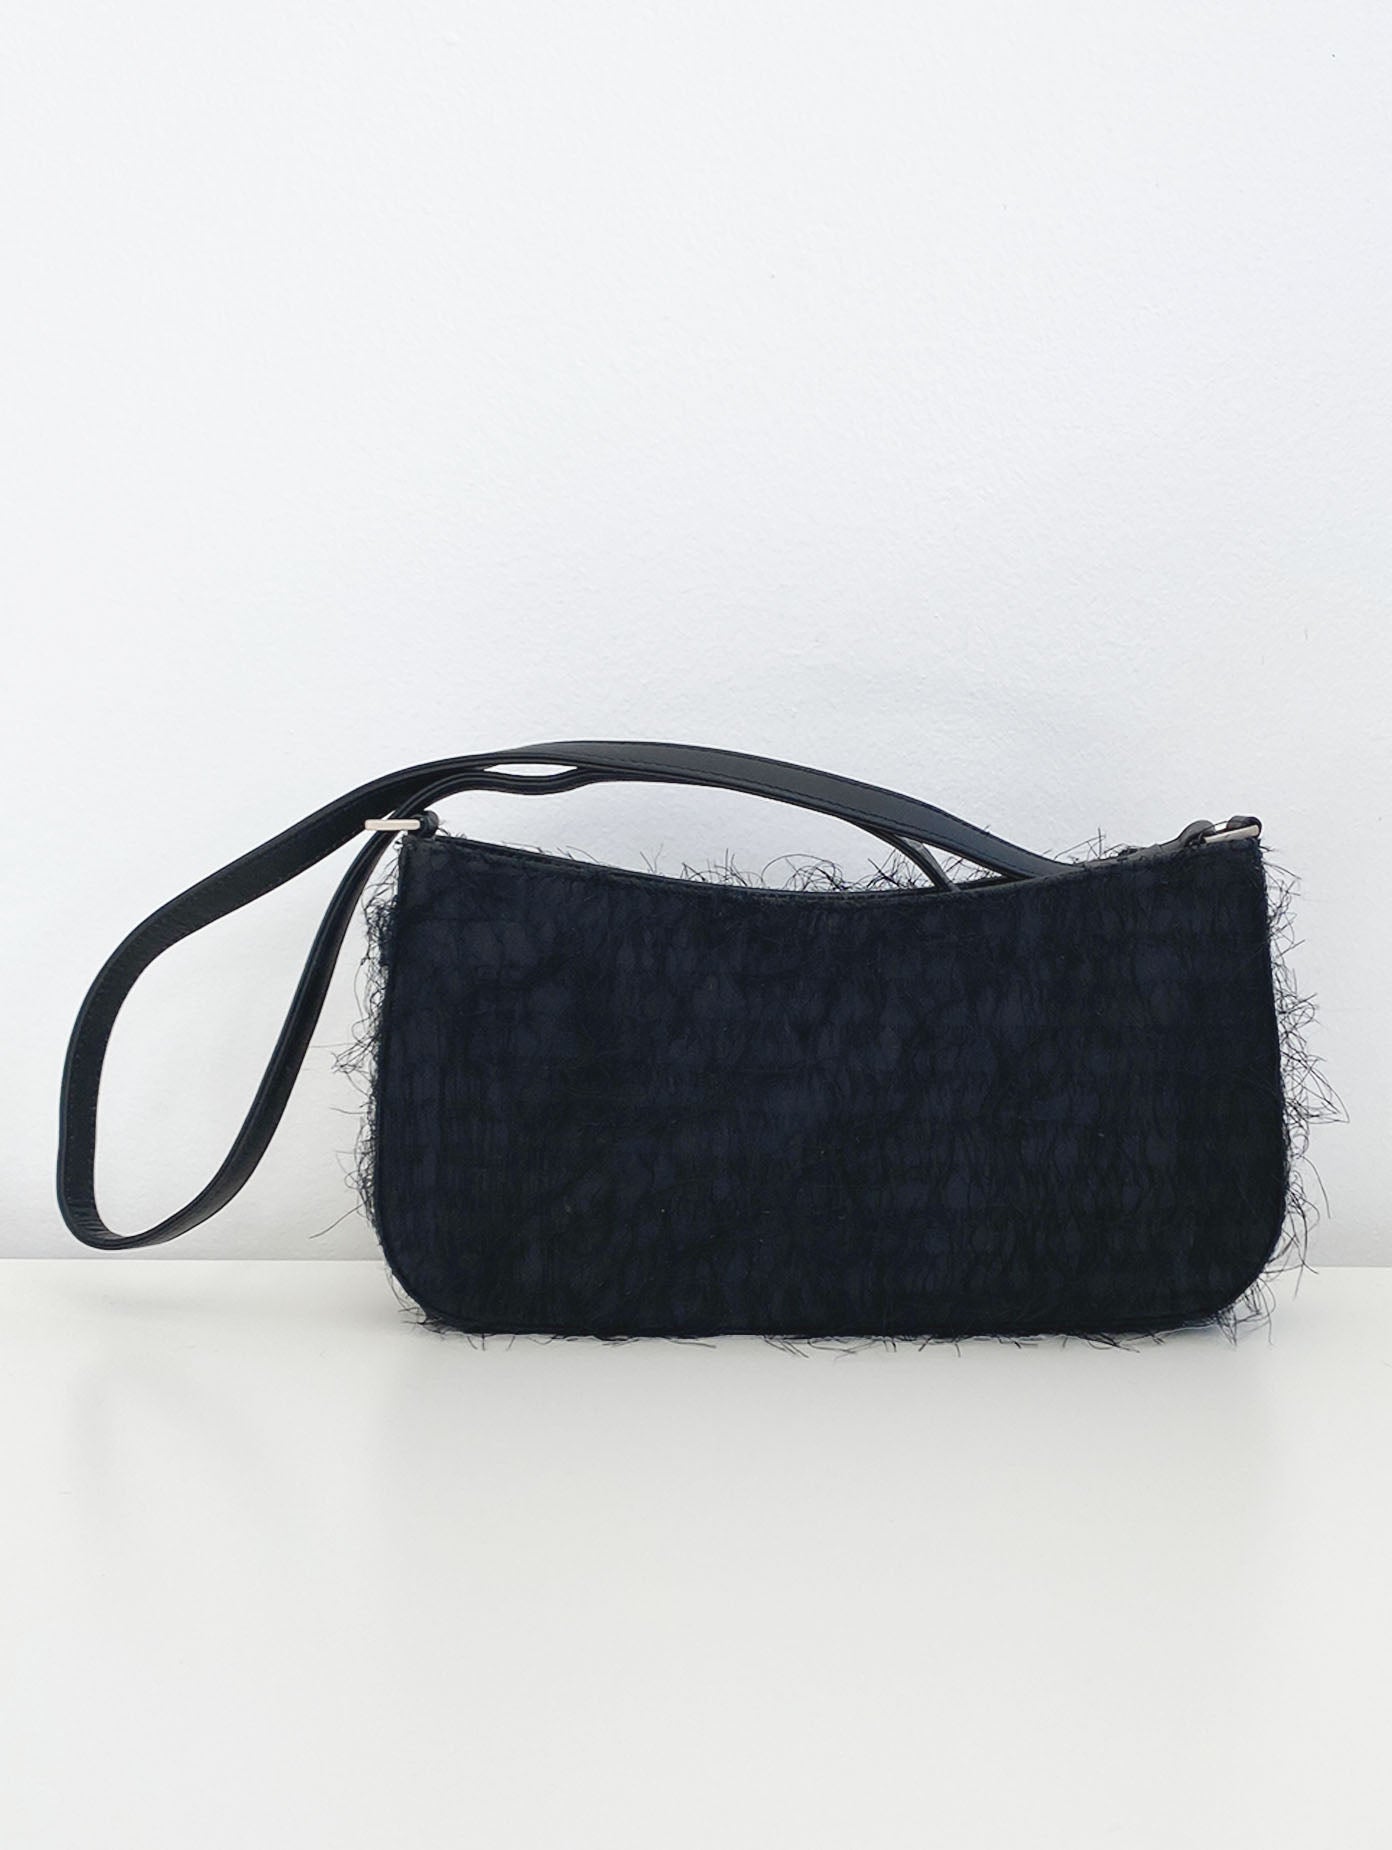 Fuzzy Black Baguette Bag